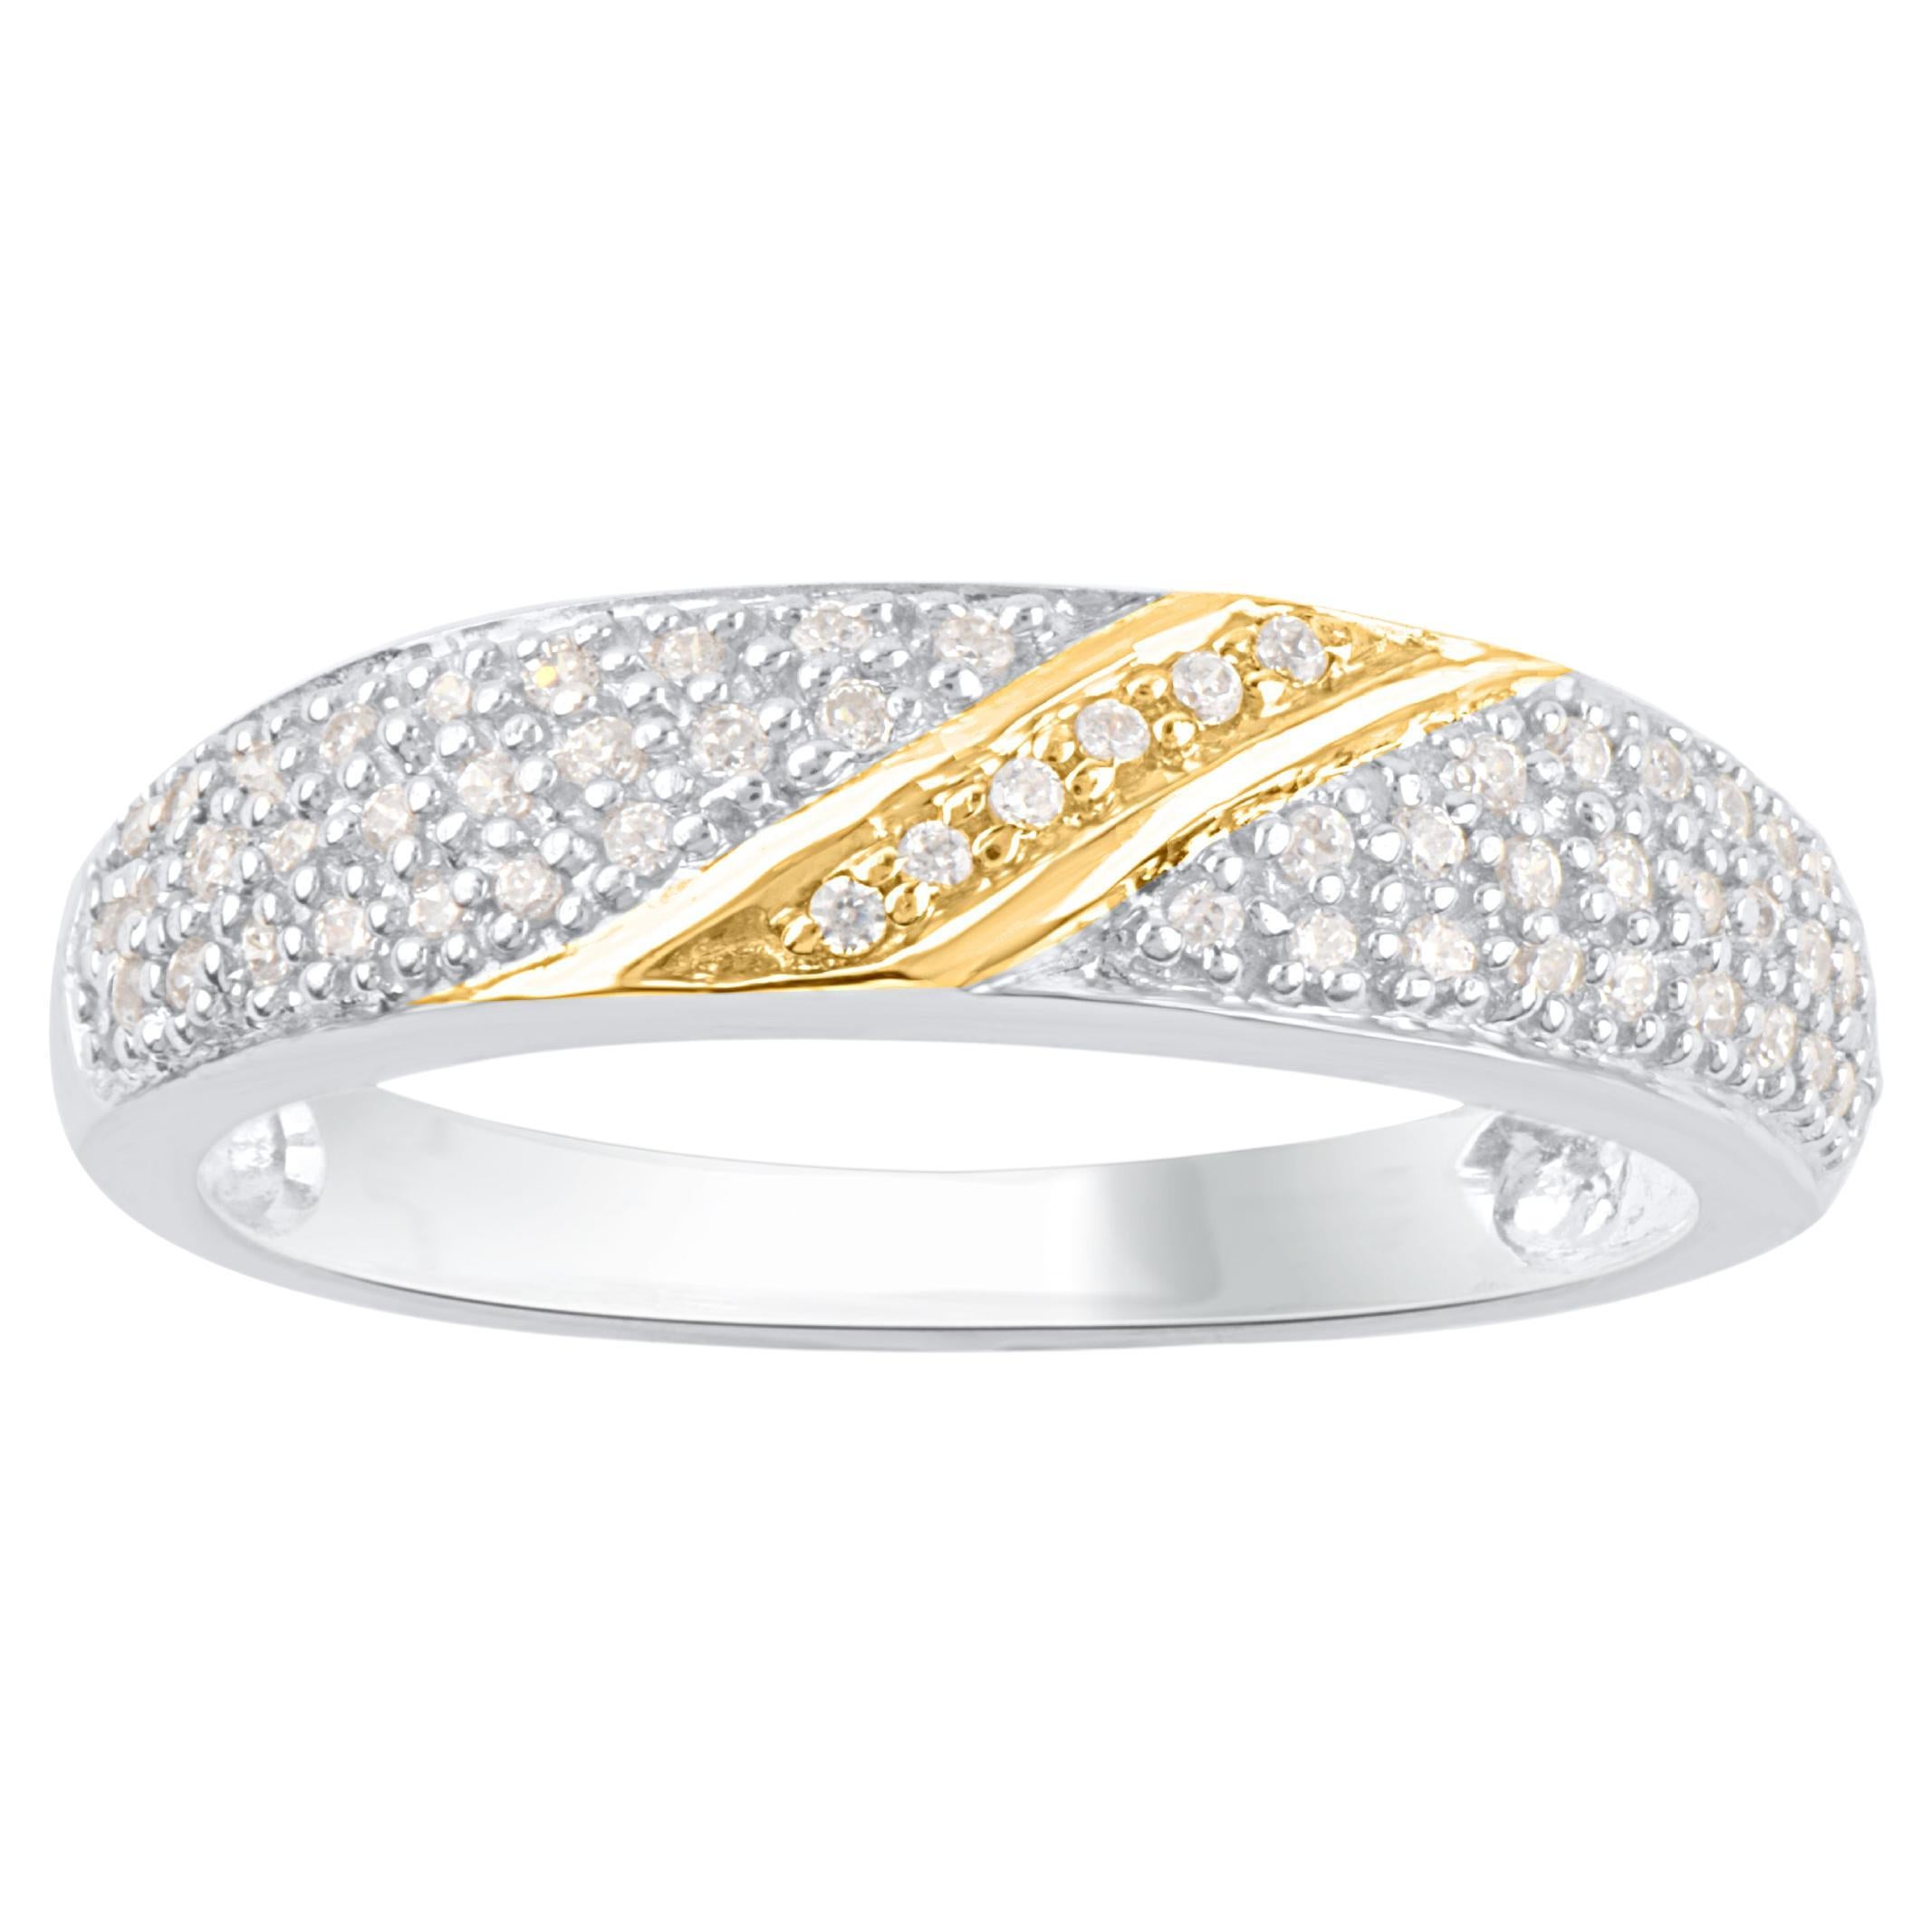 TJD 0.25 Carat Natural Diamond 14 Karat Two Tone Gold Wedding Band Ring